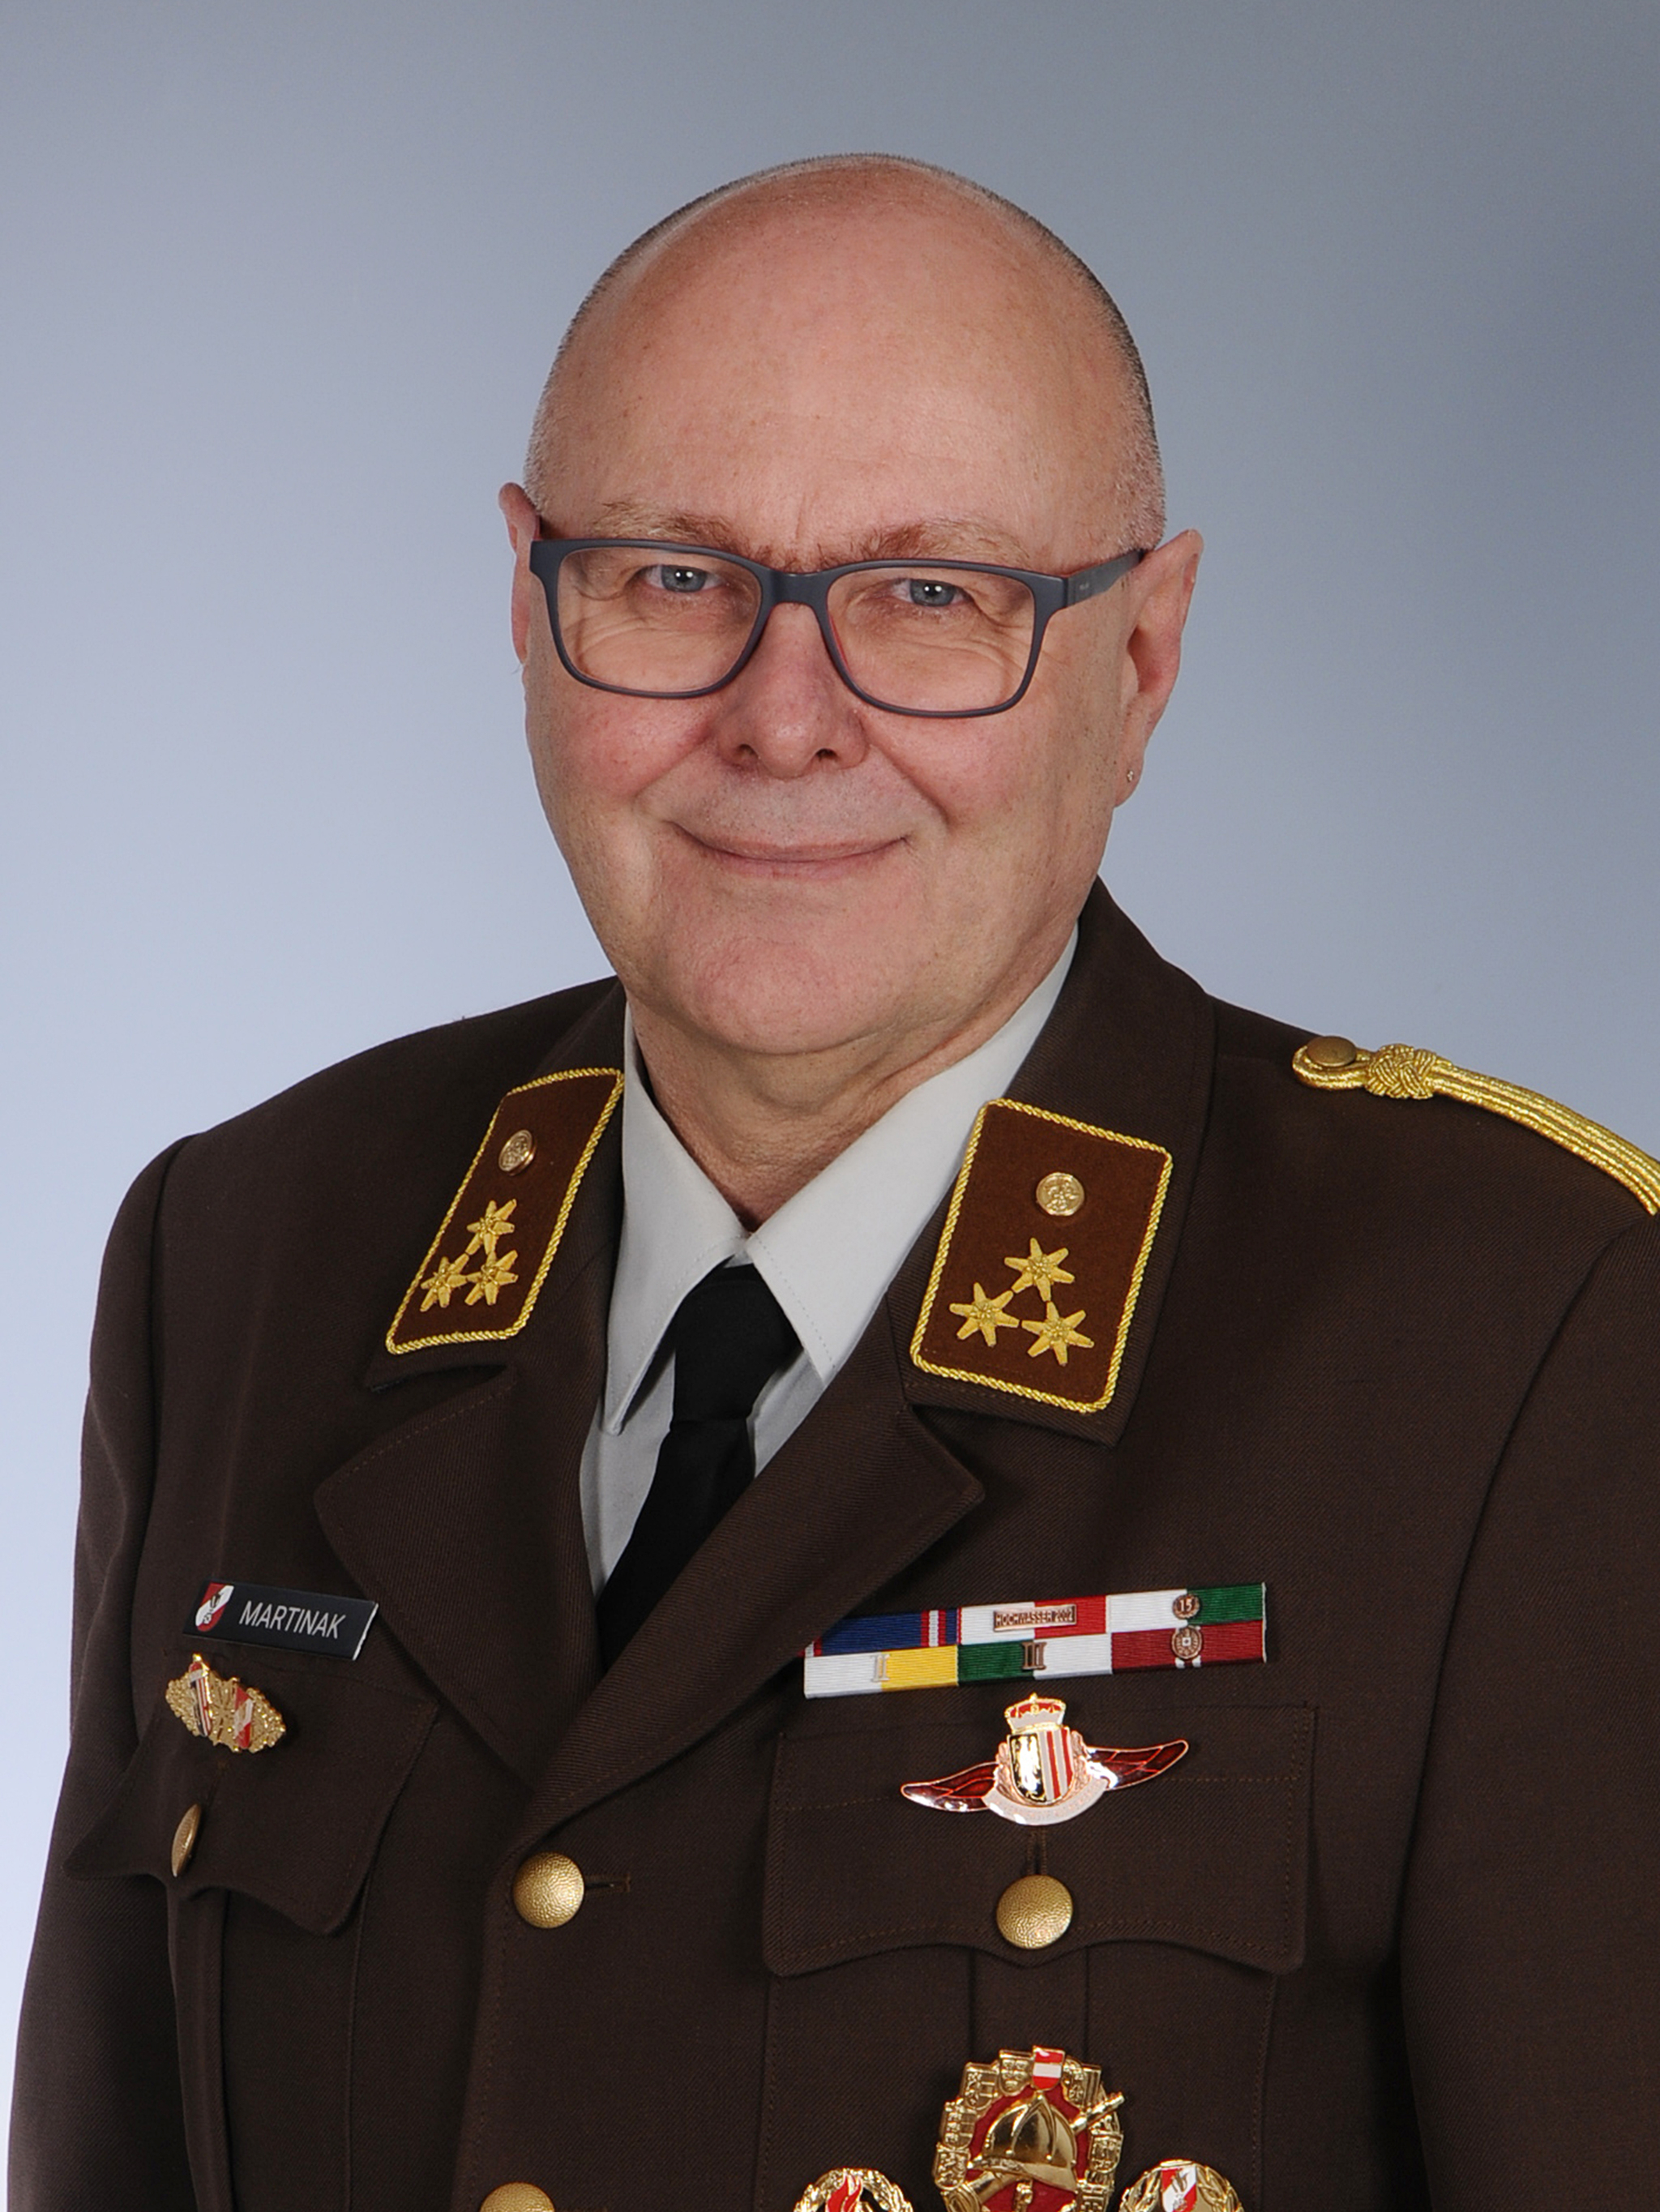 Wolfgang Martinak